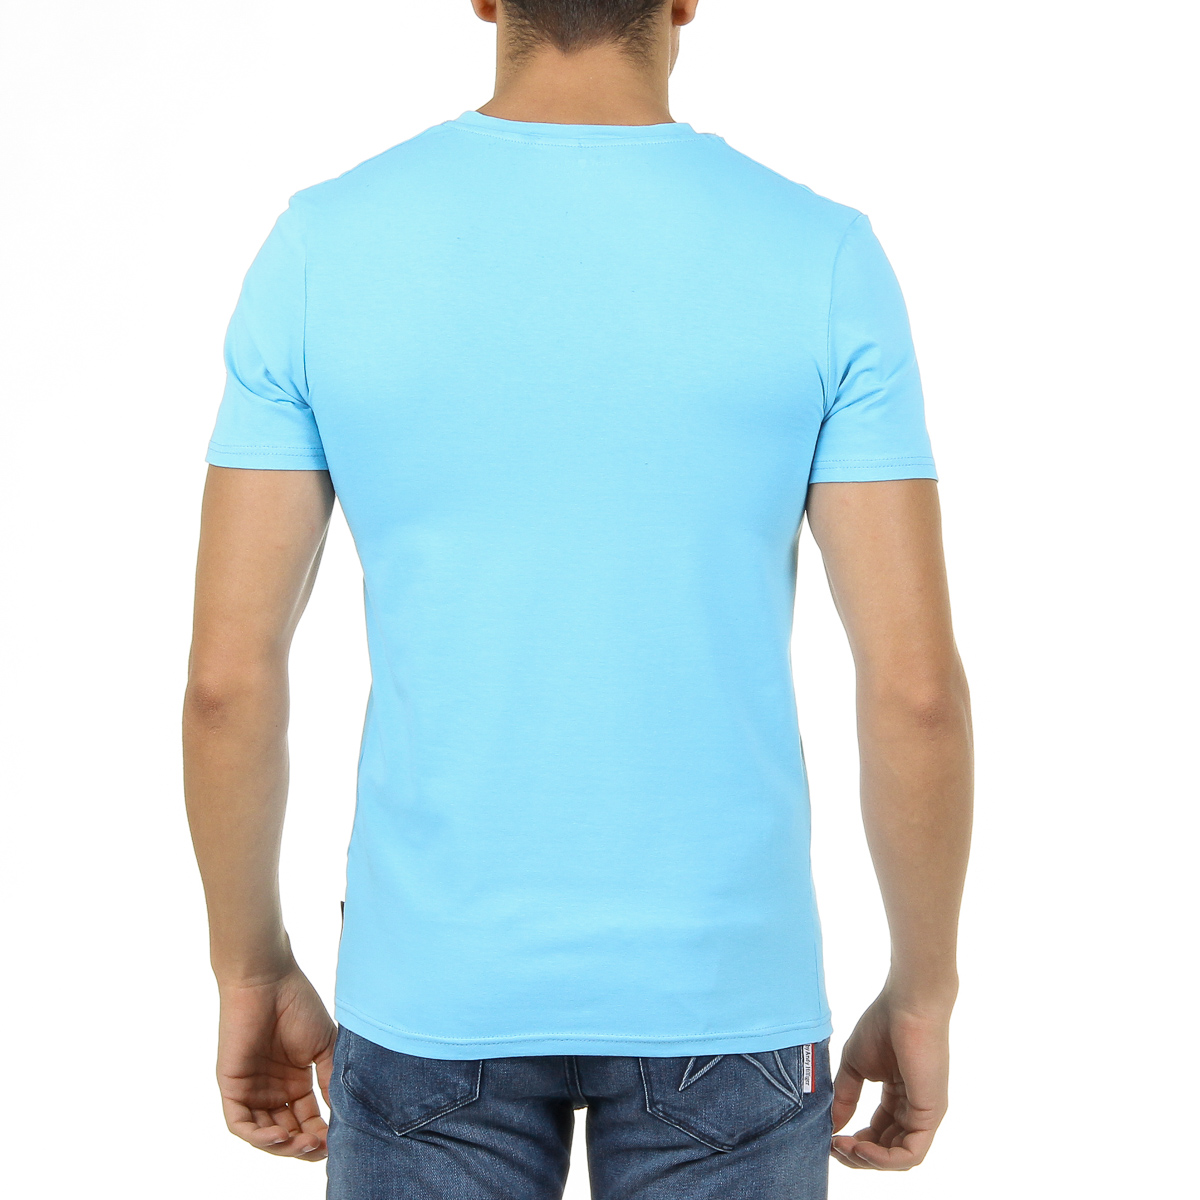 Andrew Charles Mens T-Shirt Short Sleeves V-Neck Light Blue KENAN